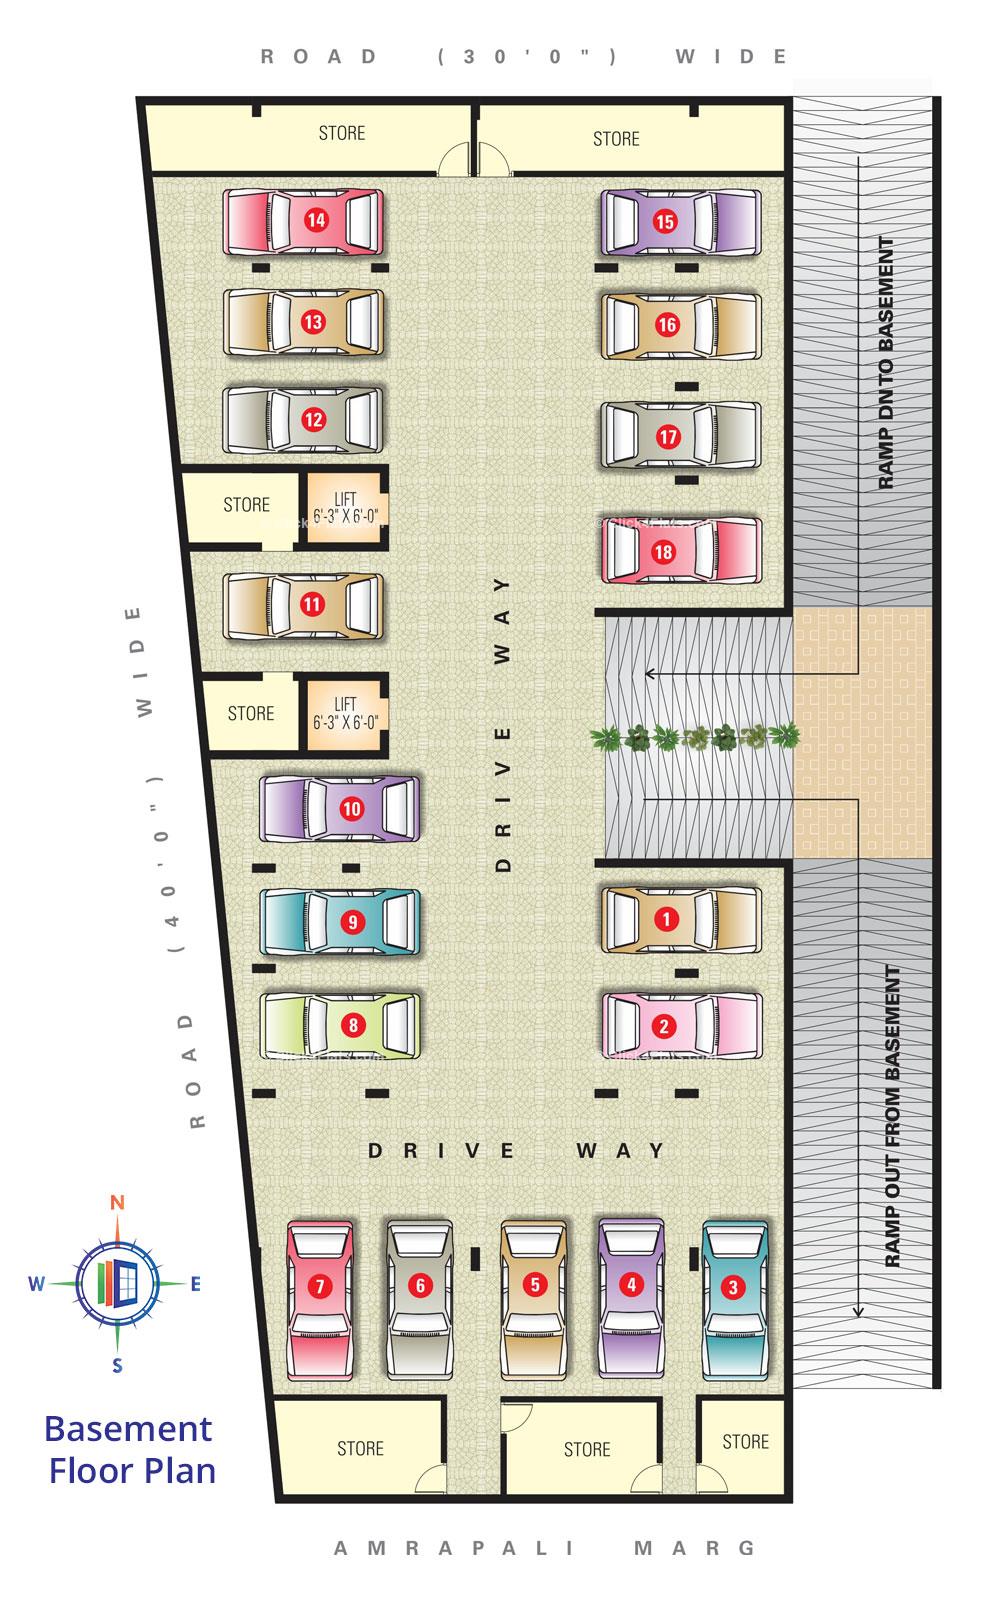 SDC Aishwarya Heights Basement Floor Plan